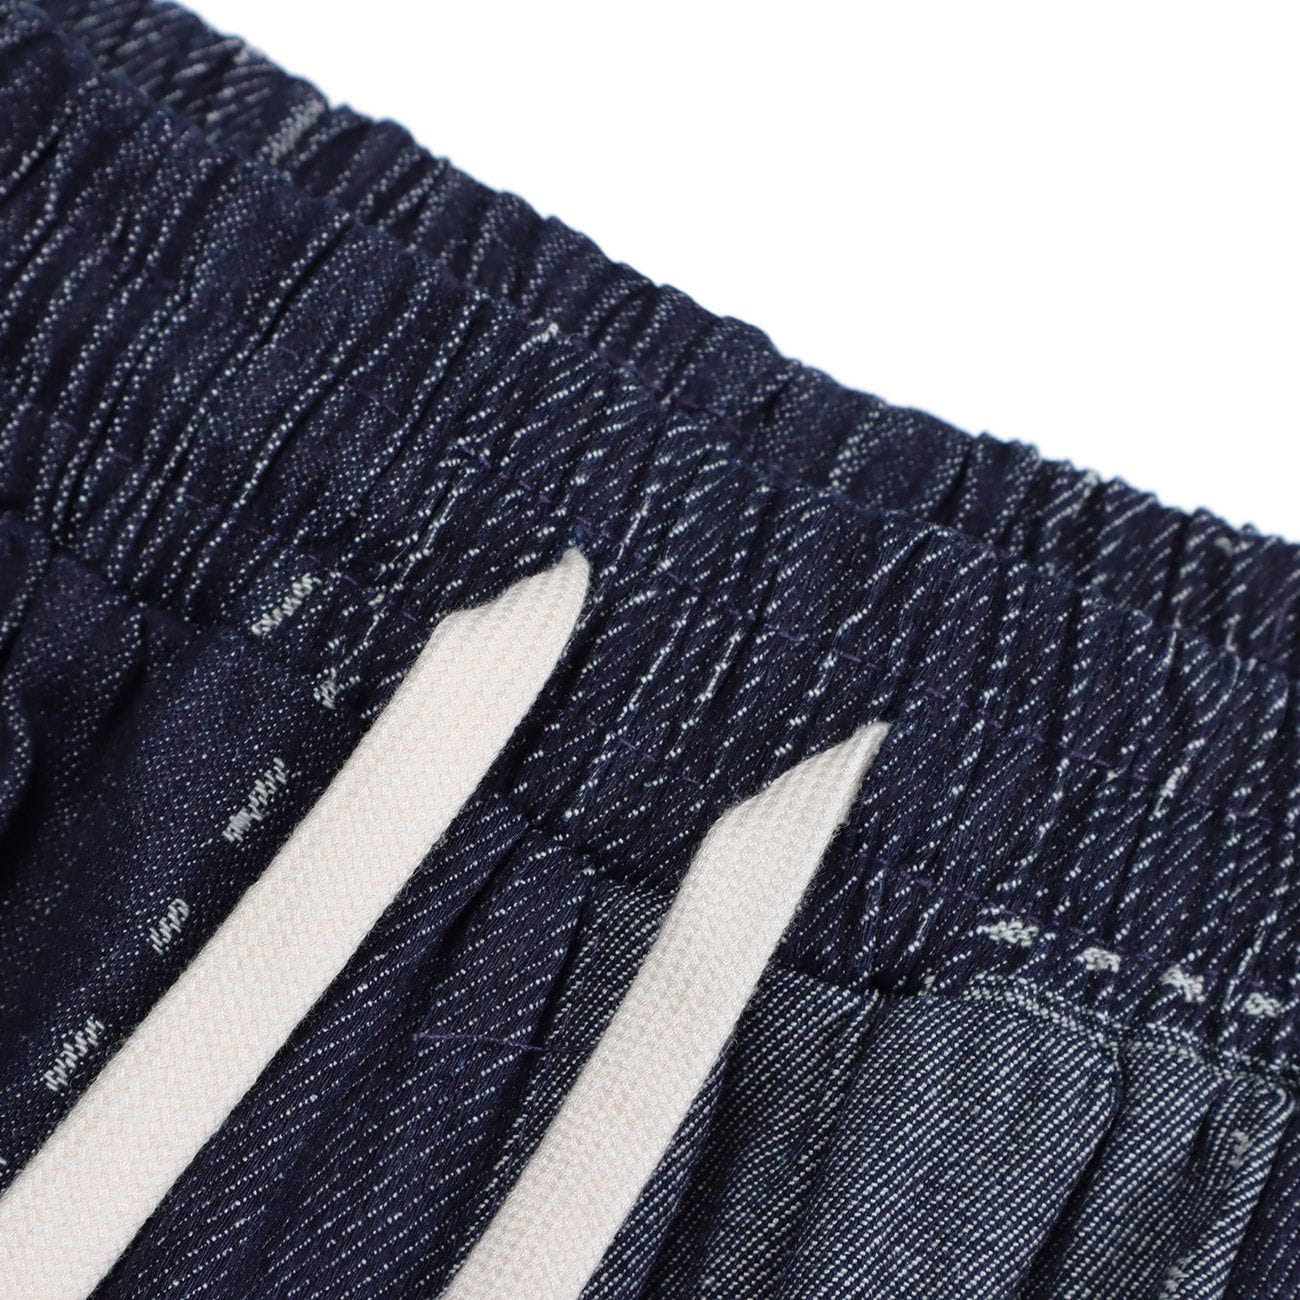 JUSTNOTAG Color Matching Denim Shorts Drawstring Waist Shorts